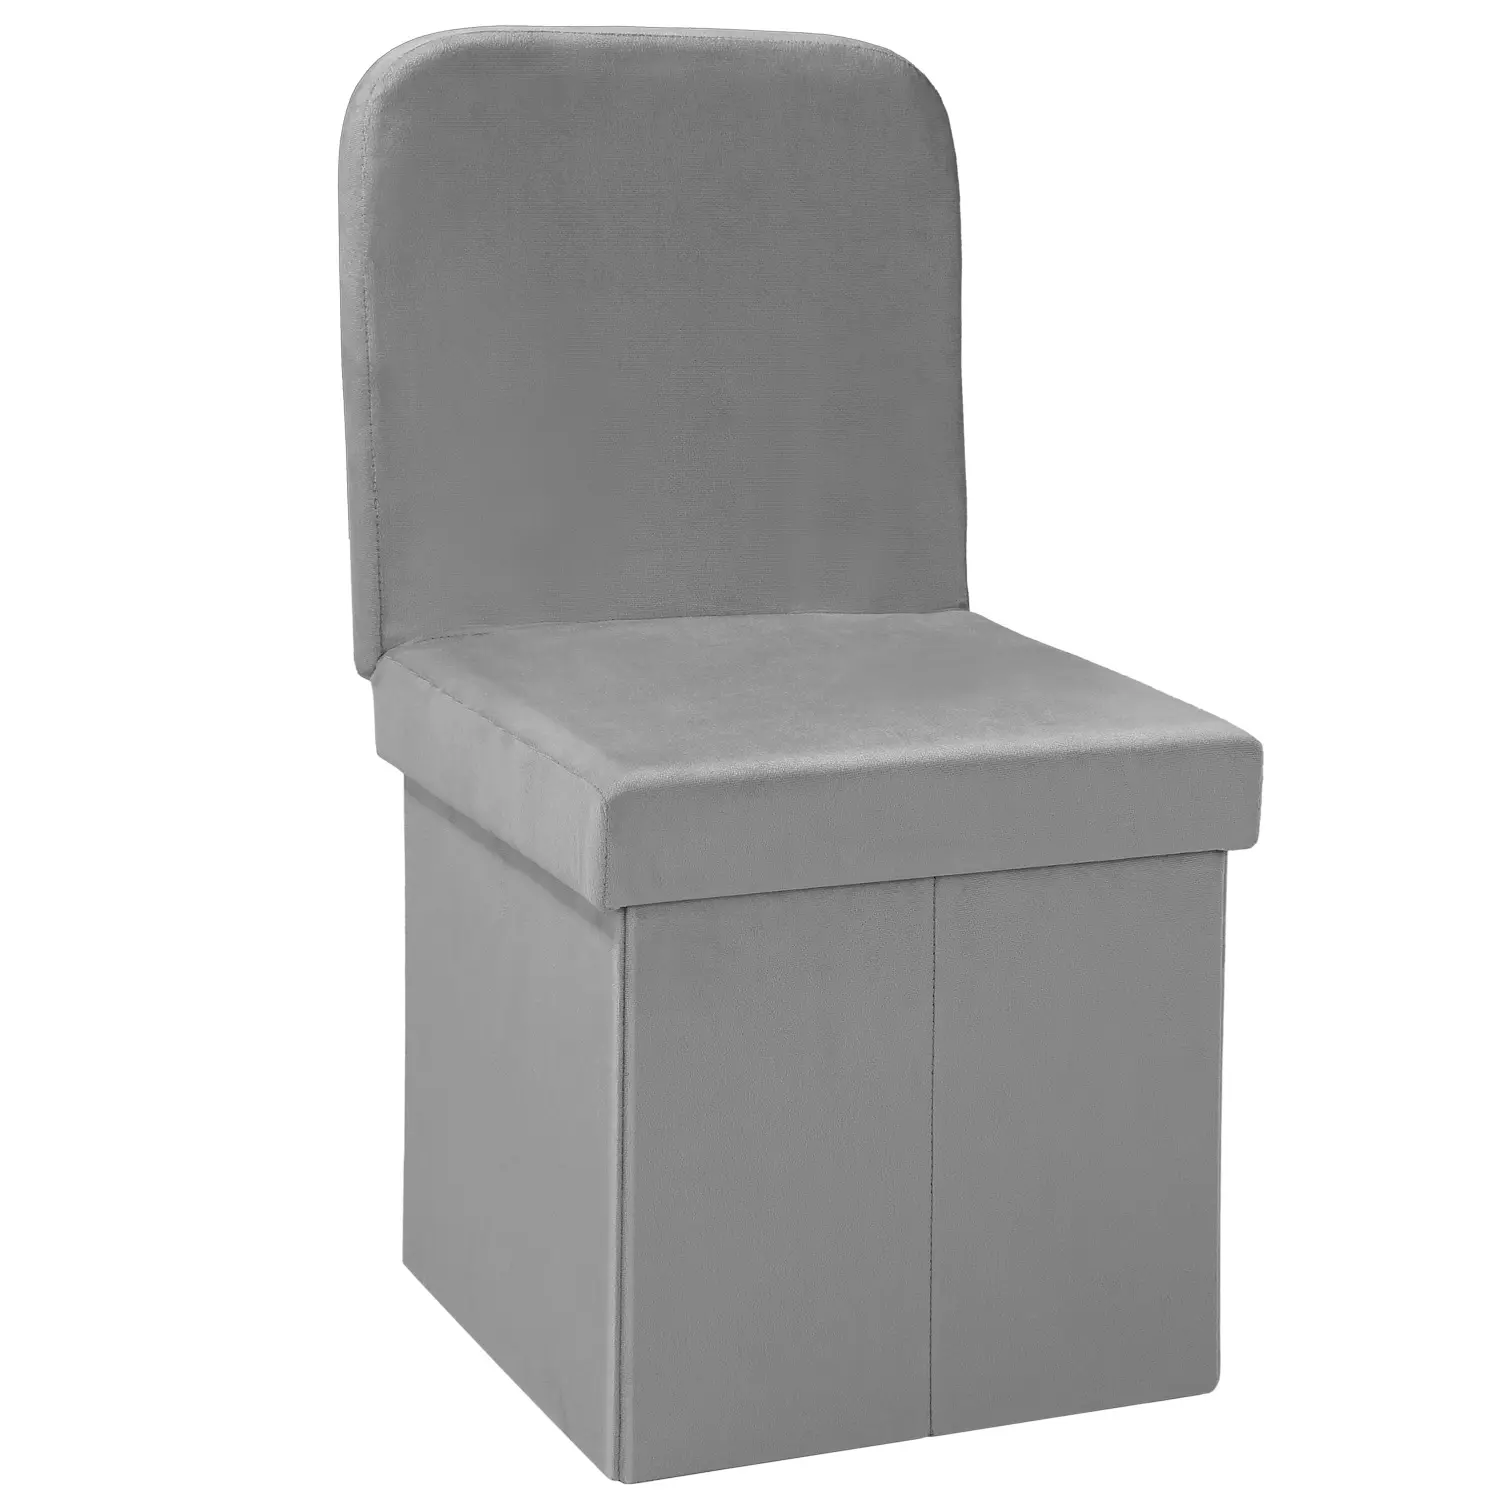 Veludo Otomano Cadeira com Encosto Dobrável Armazenamento Pouf Personalizado Sala Mobiliário Moderno Armazenamento Caixa Cadeira Toda Venda